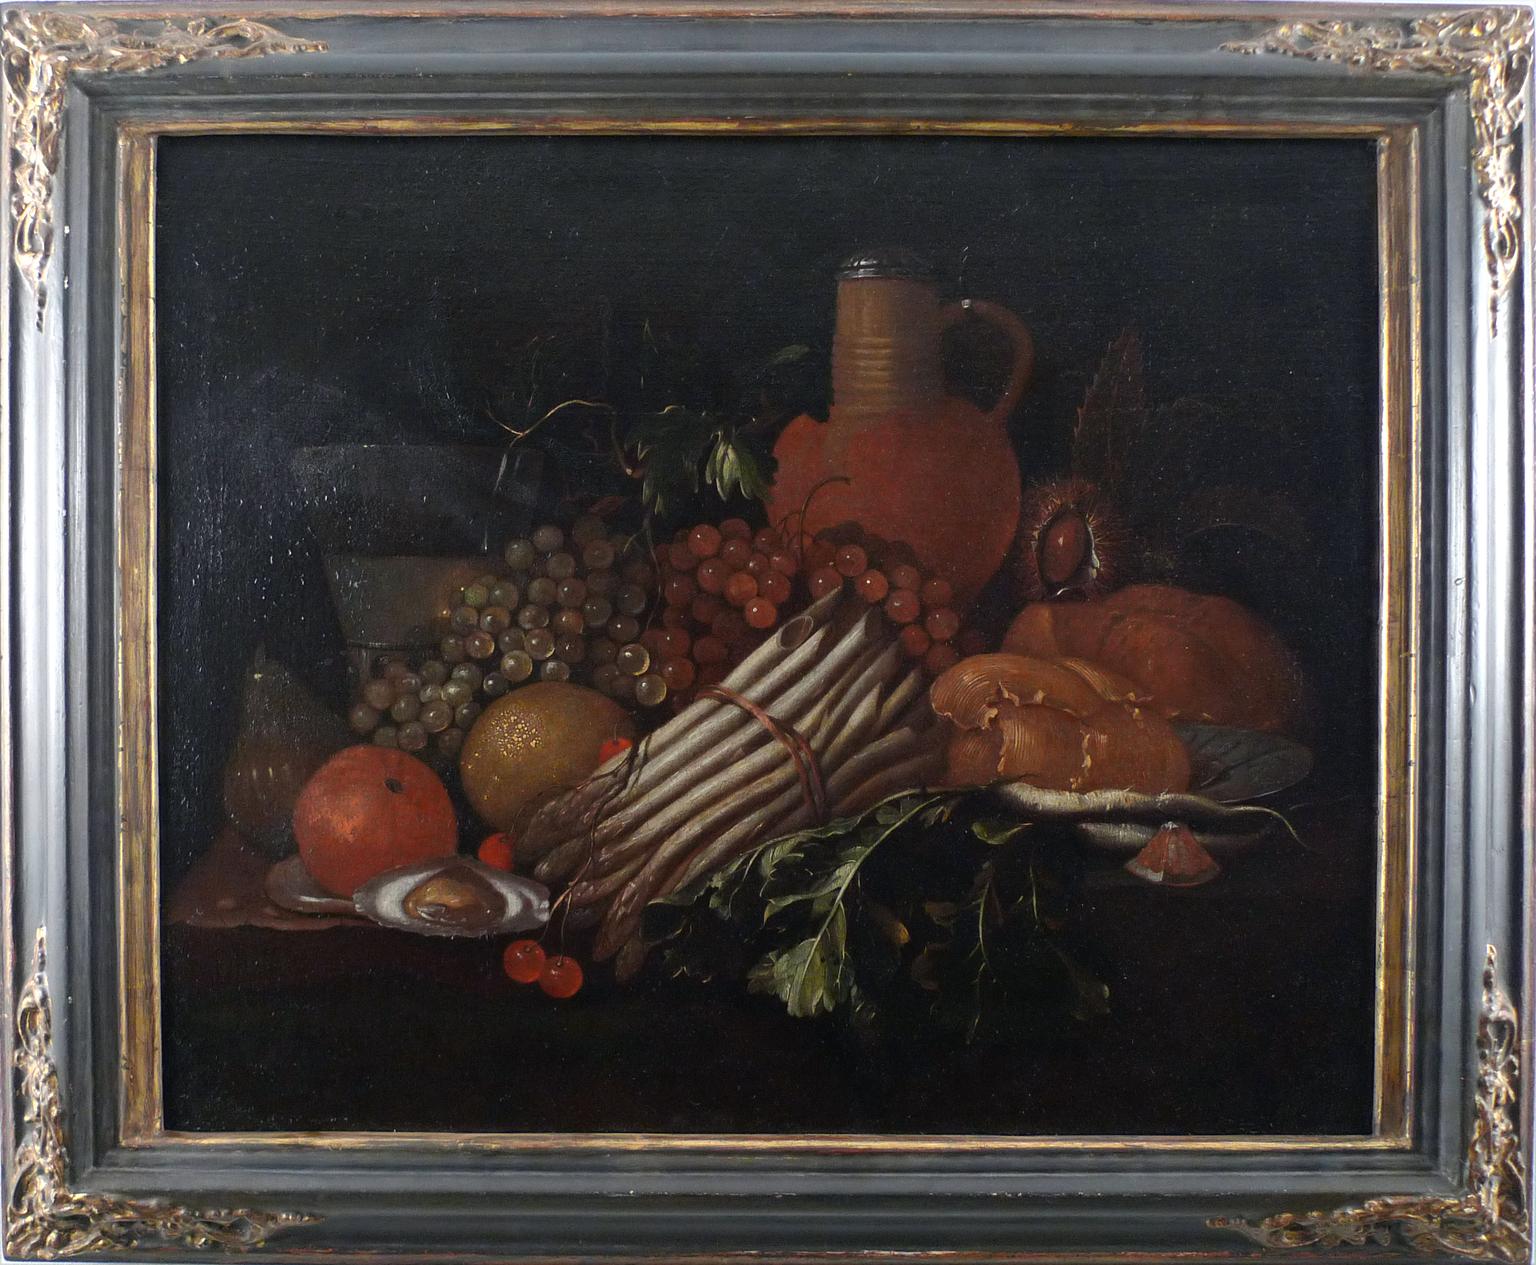 Unknown Still-Life Painting – "Stillleben mit Früchten", 17. Jahrhundert Öl auf Leinwand von Flemish School